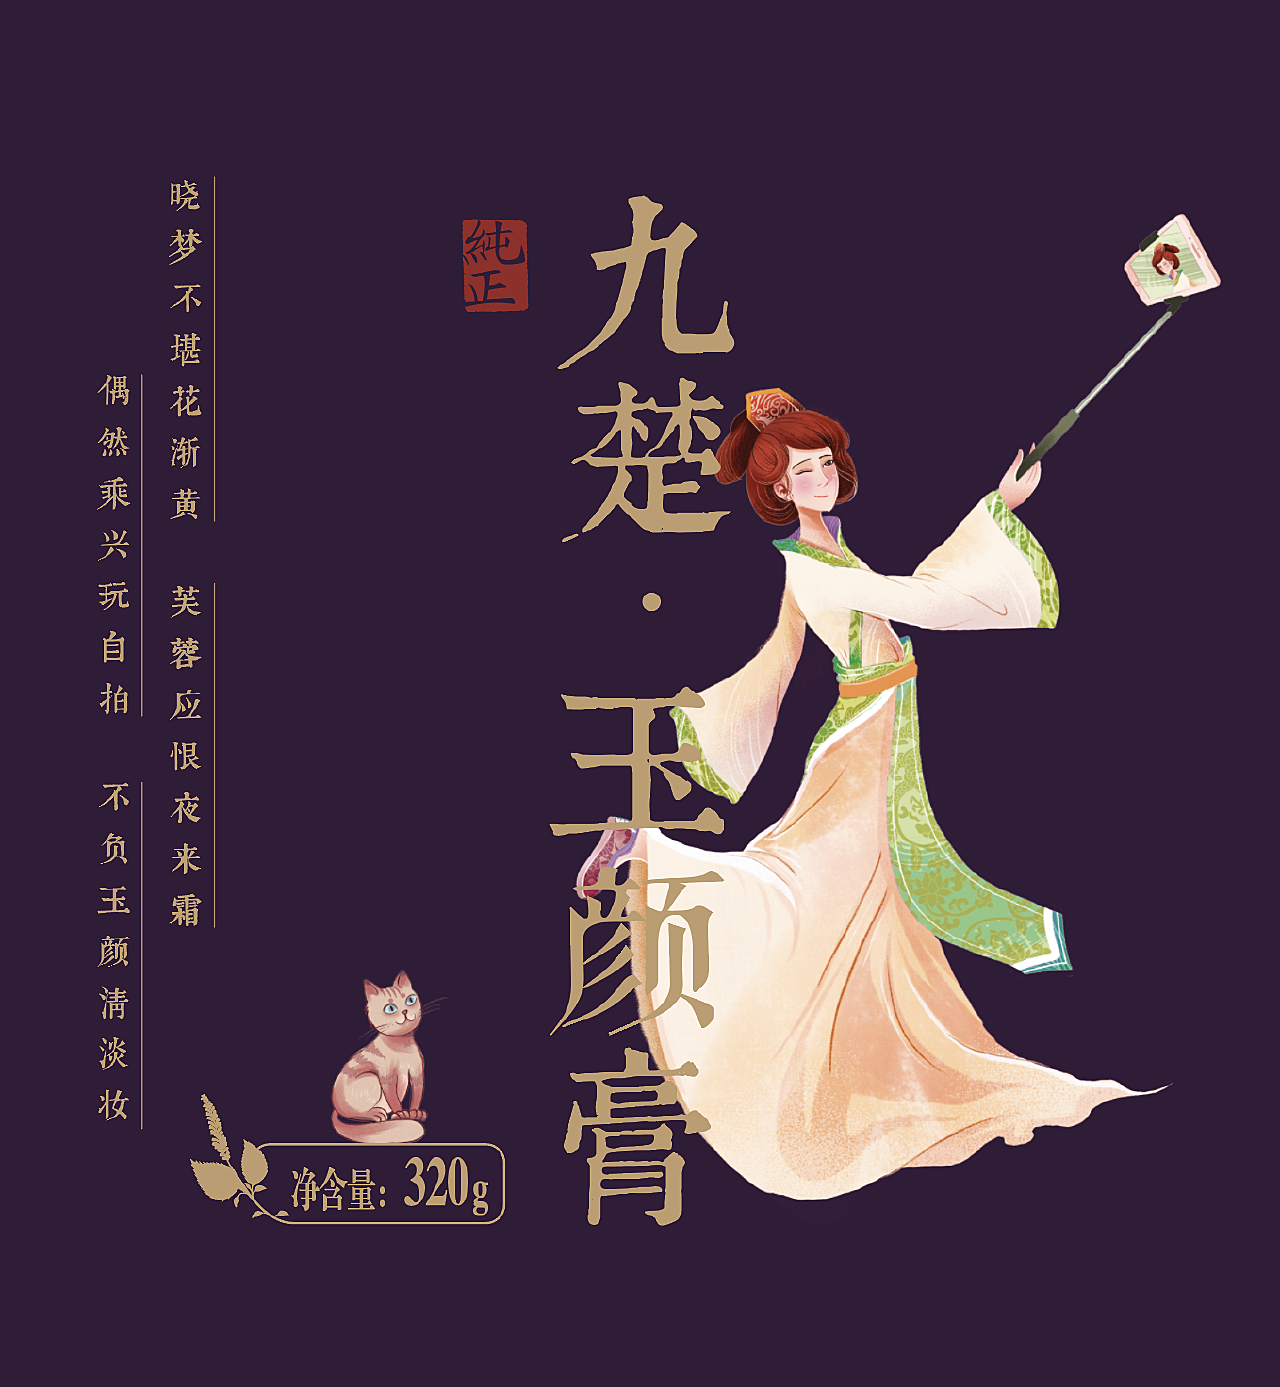 解密中国传统女性婚服(一)————庄重的先秦时期新娘_婚礼